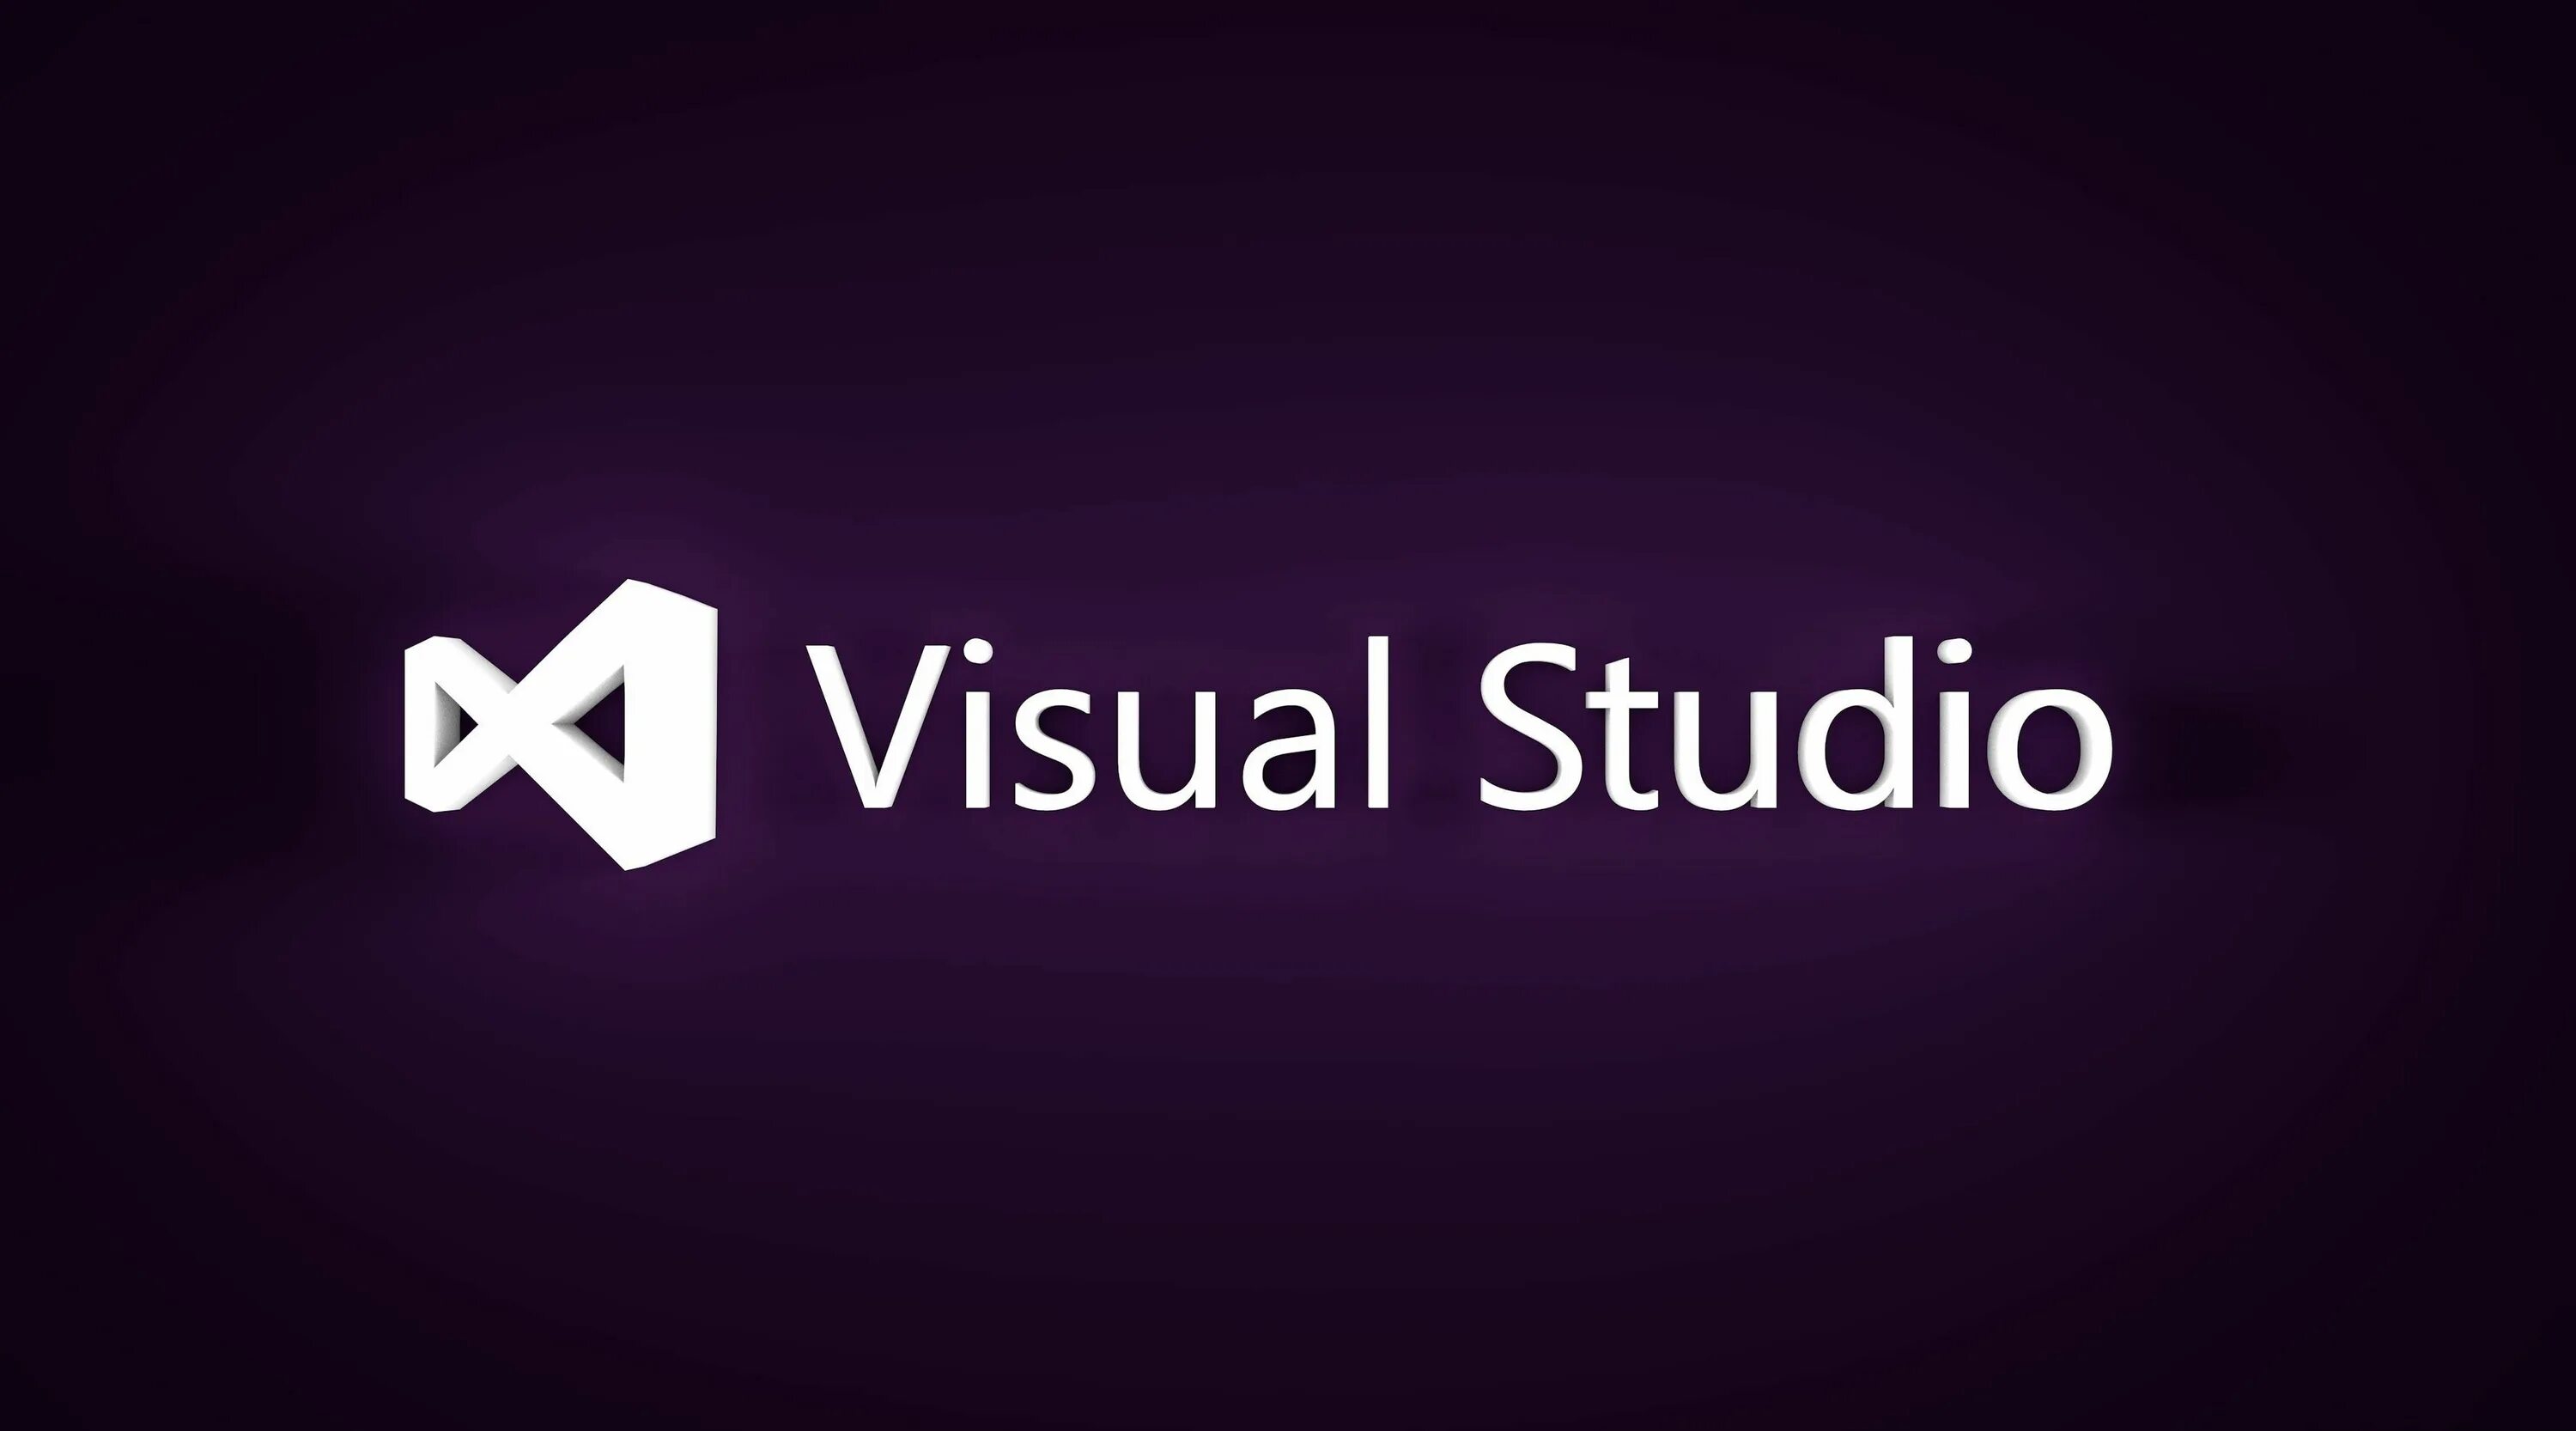 Net studio c. Visual Studio. Microsoft Visual Studio. Вижуал студия. Визуал студио c.